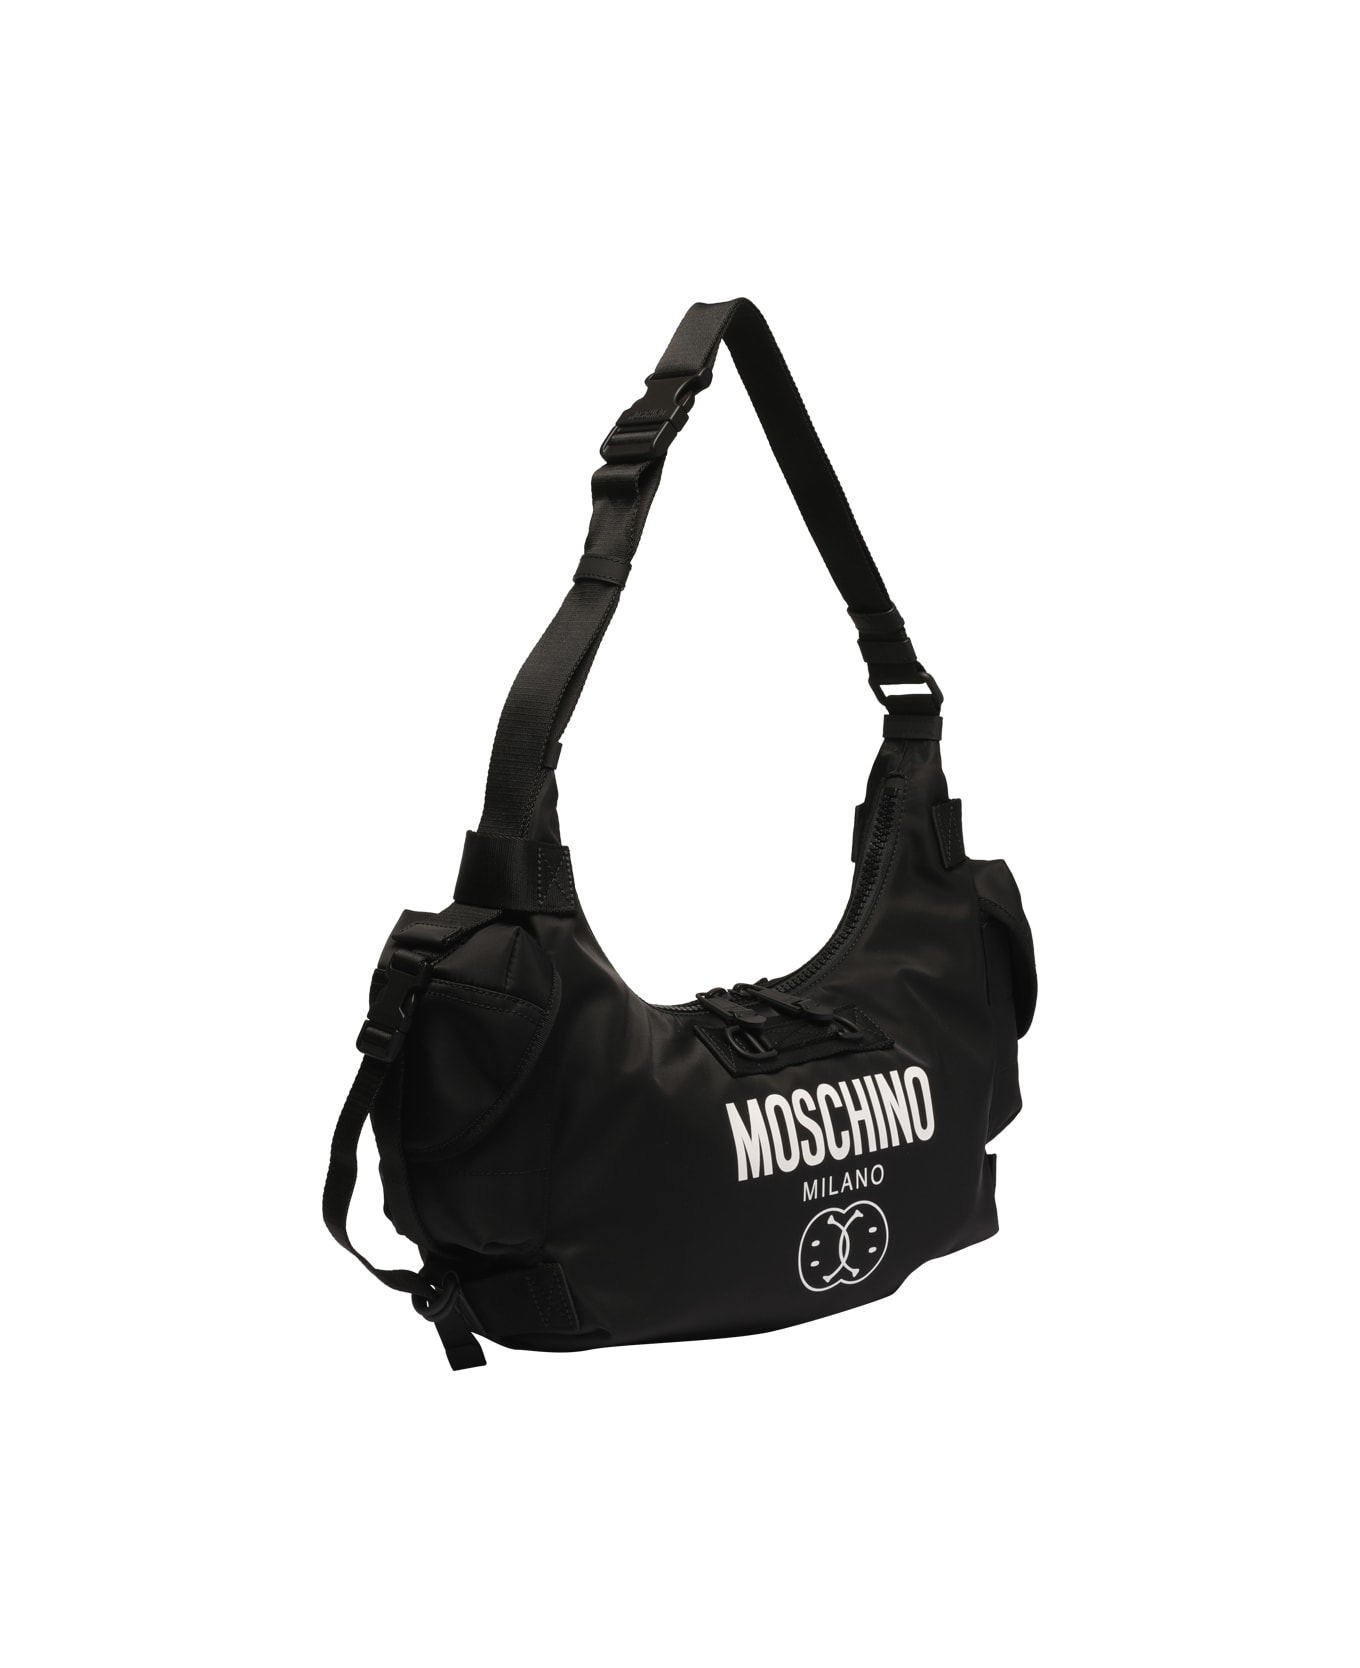 Moschino Double Smiley Hobo Bag - Black